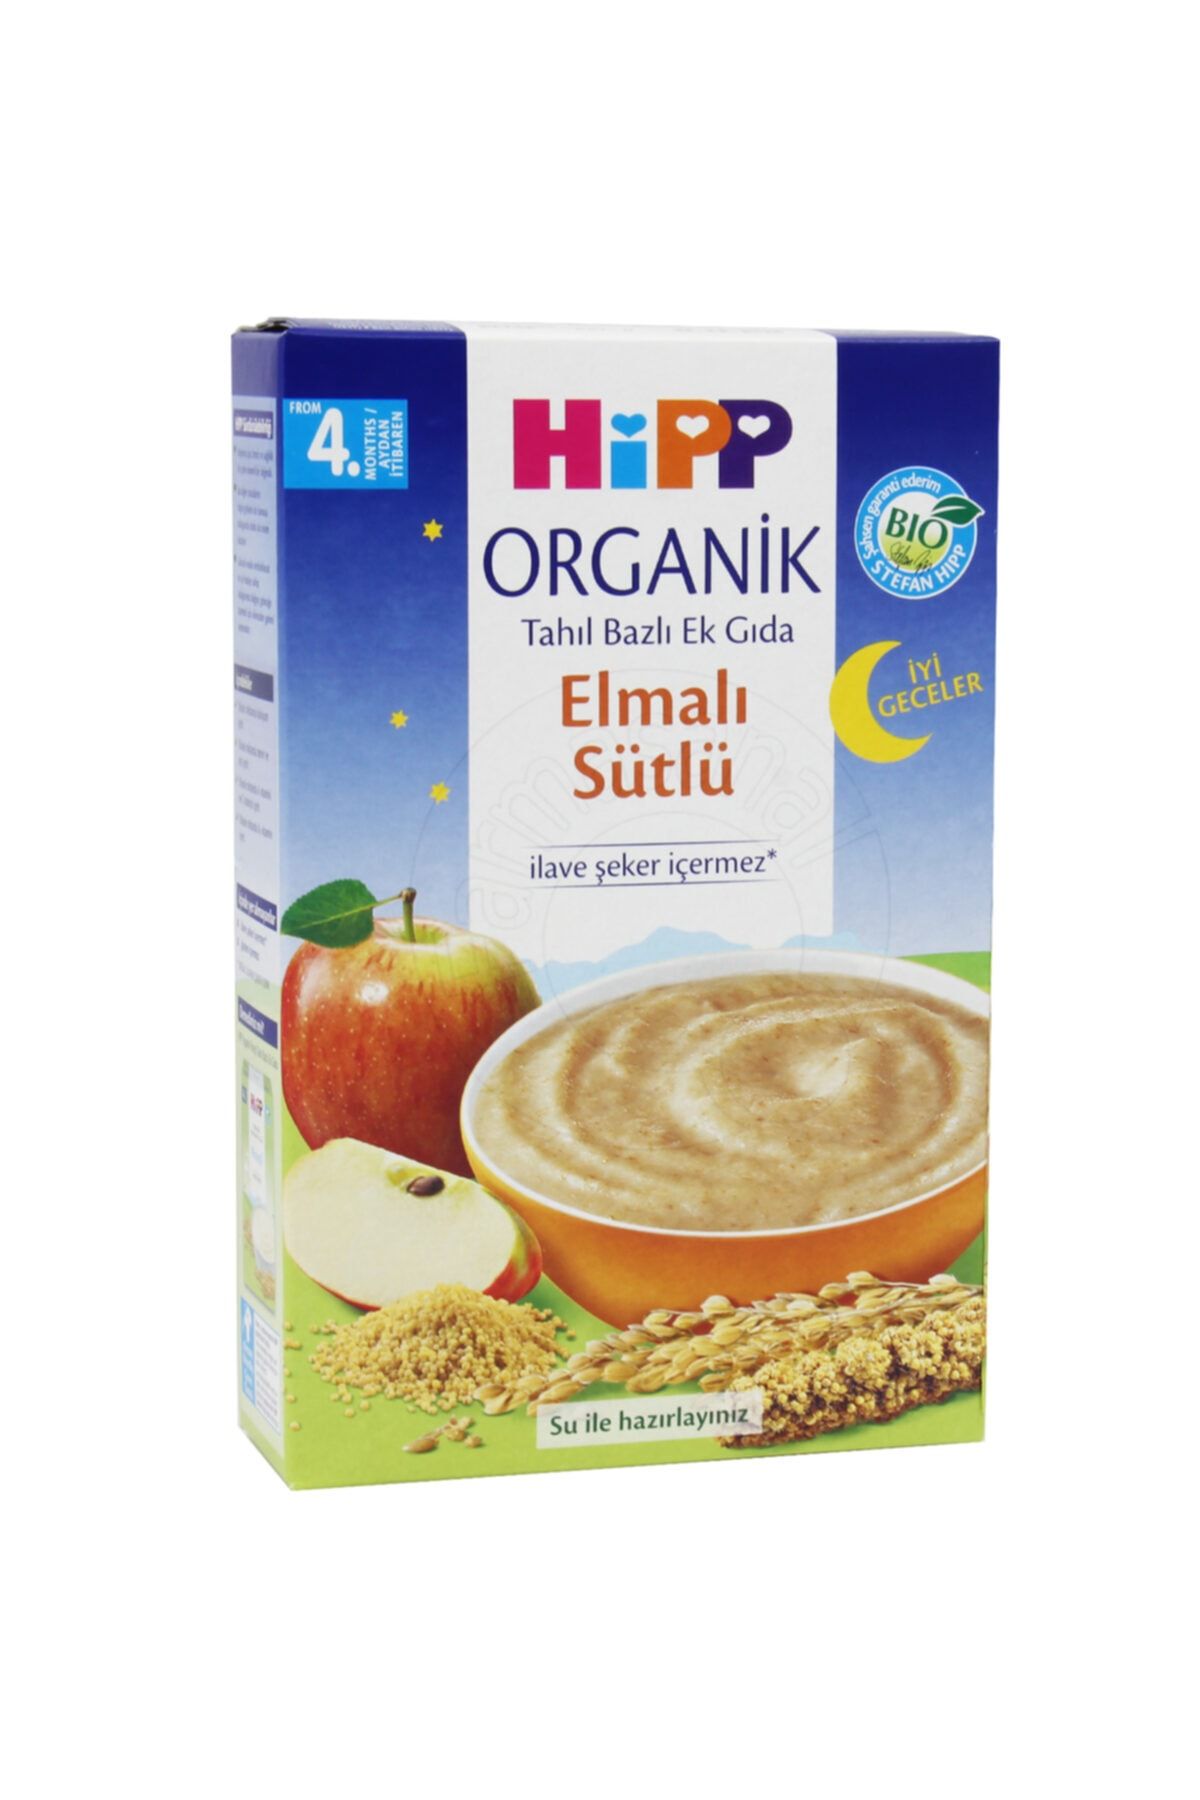 Hipp Iyi Geceler Organik Elmalı Bebek Gıdası 250 Gr